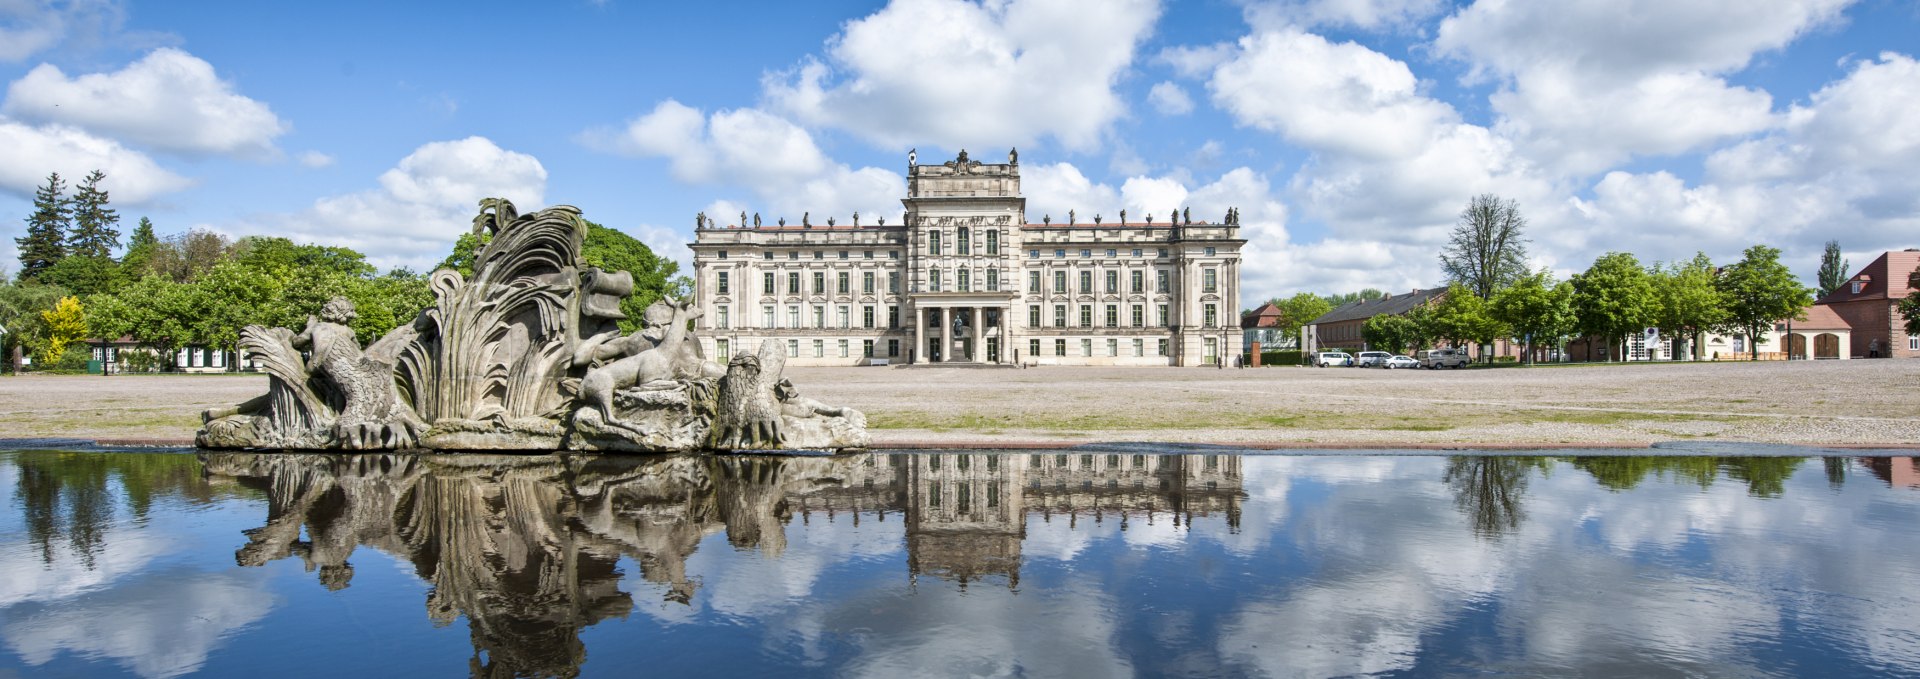 Schloss Ludwigslust mit Spiegelung im Karauschenteich, © SSGK MV / Jörn Lehmann